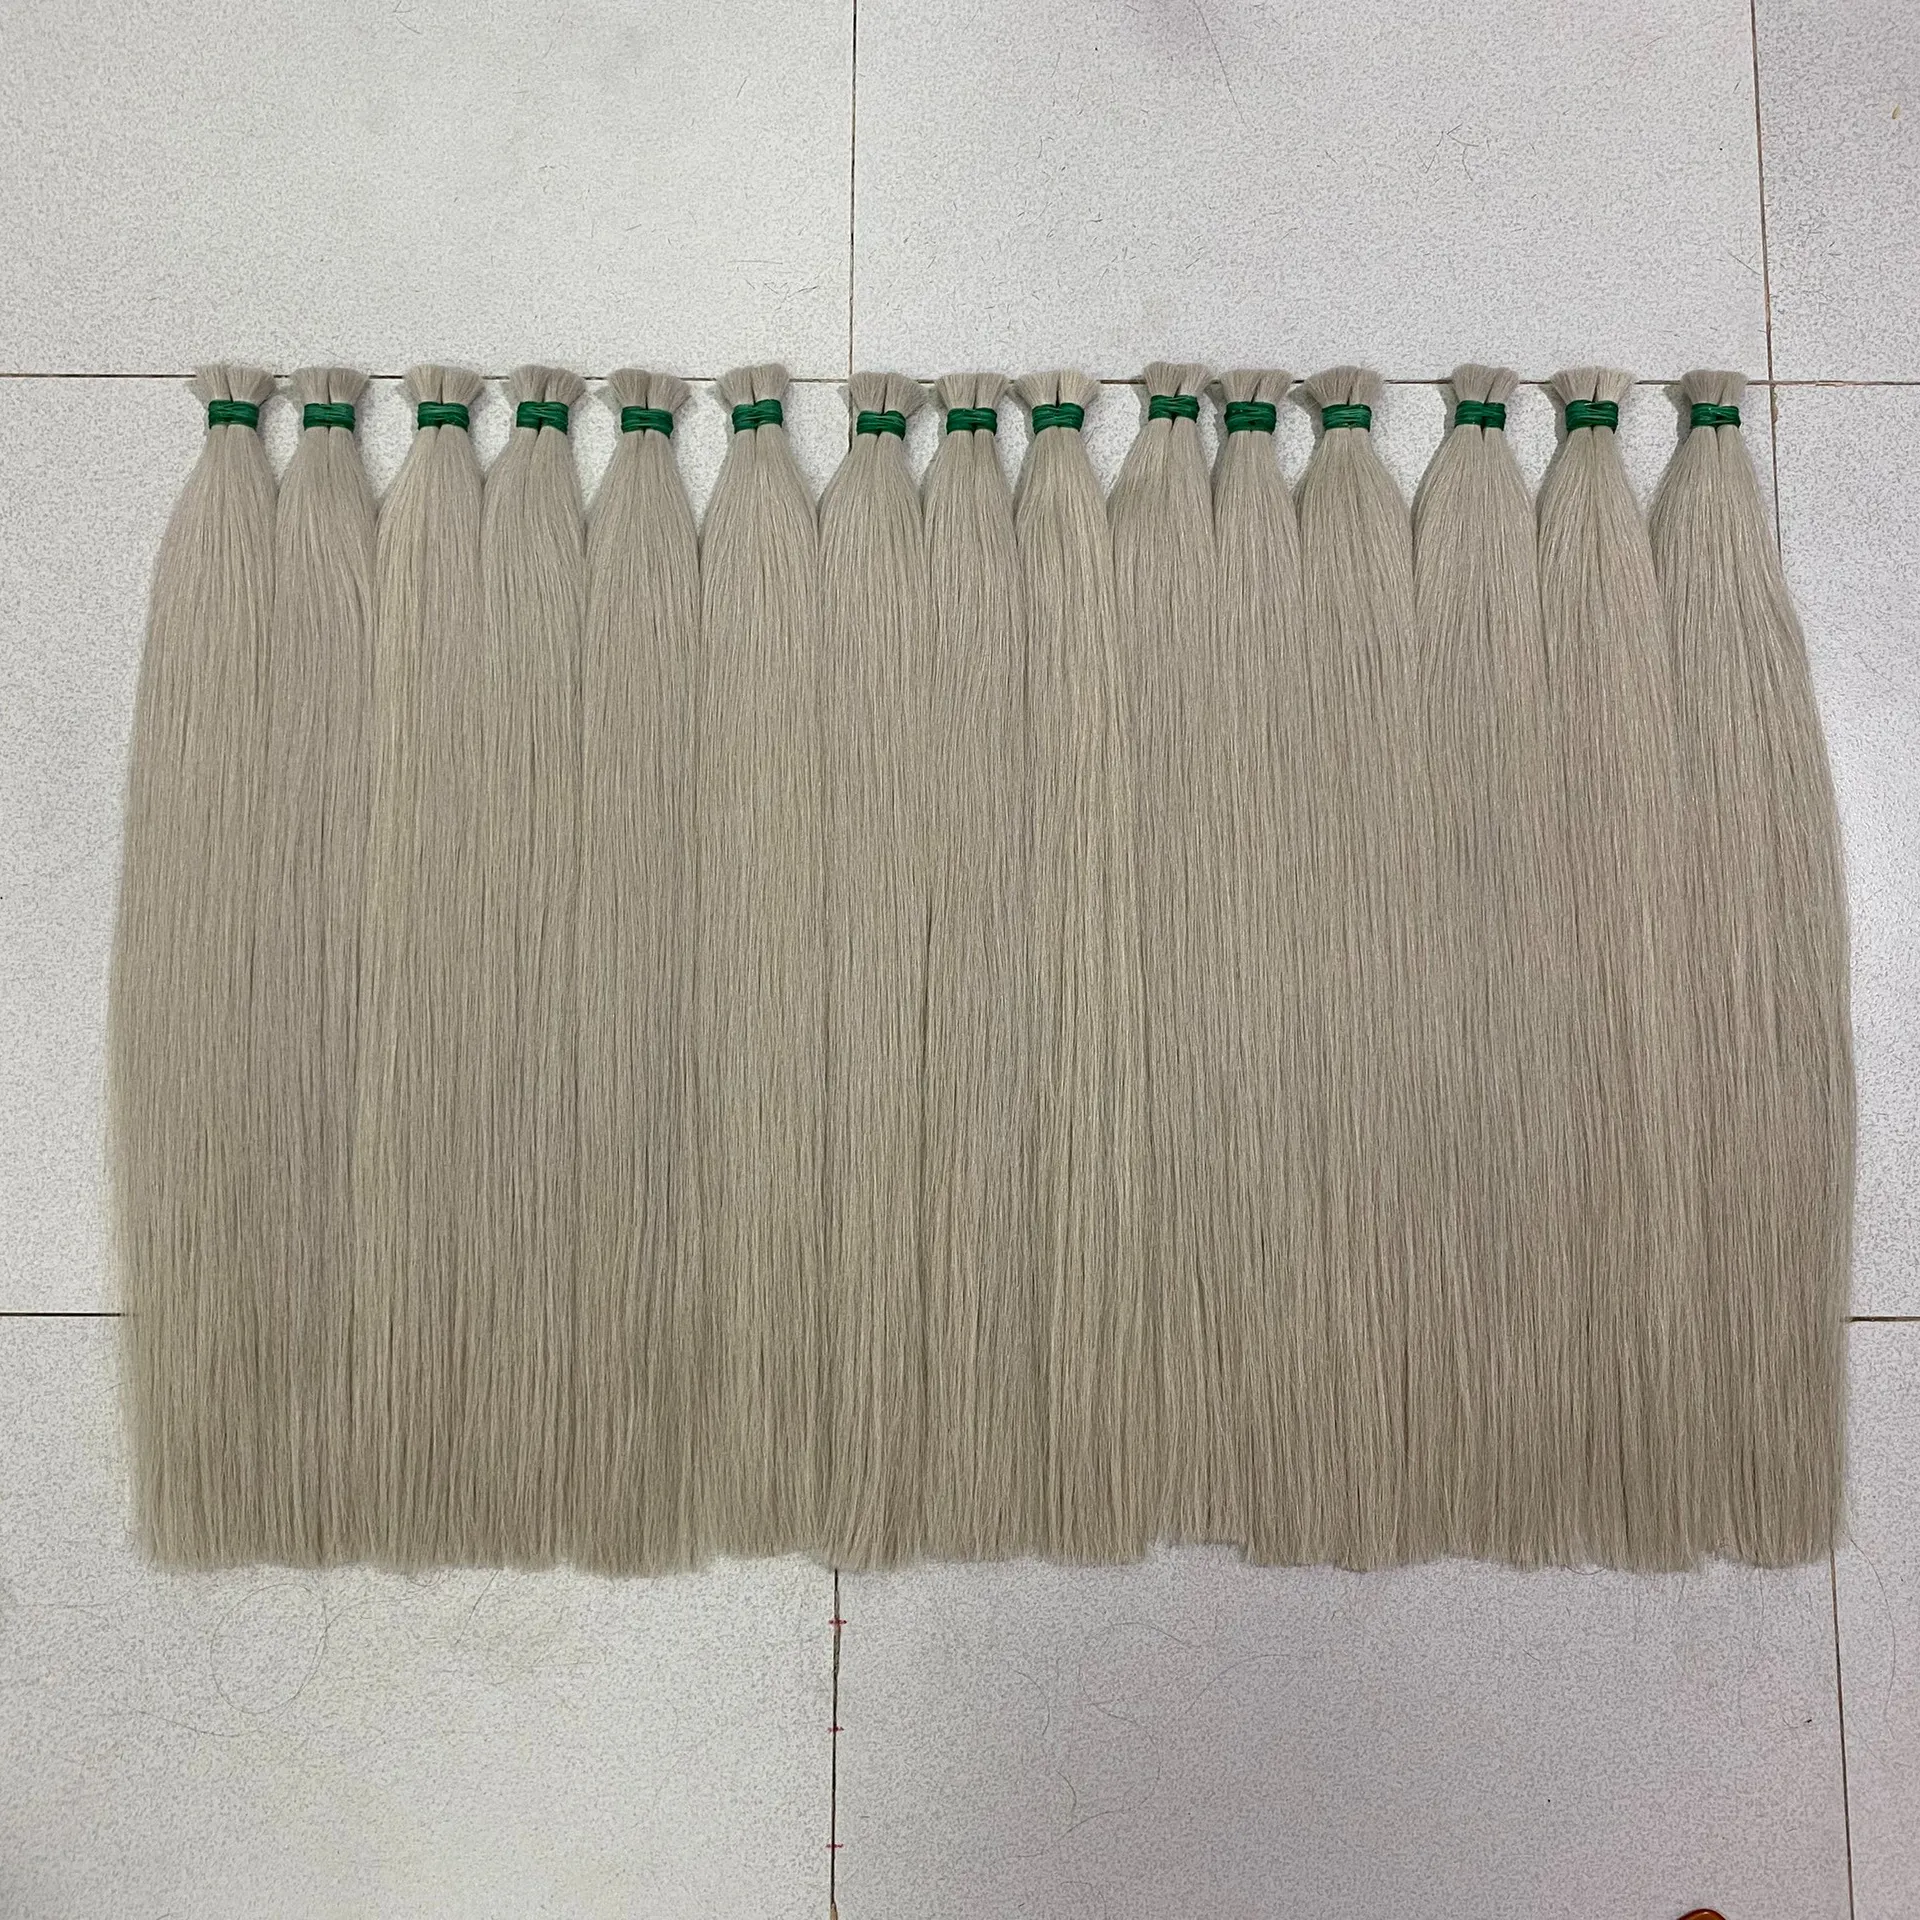 하이 퀄리티 원시 베트남 처녀 머리 실버 회색 색상 대량 머리 연장 비 화학 두꺼운 끝 베트남에서 만든